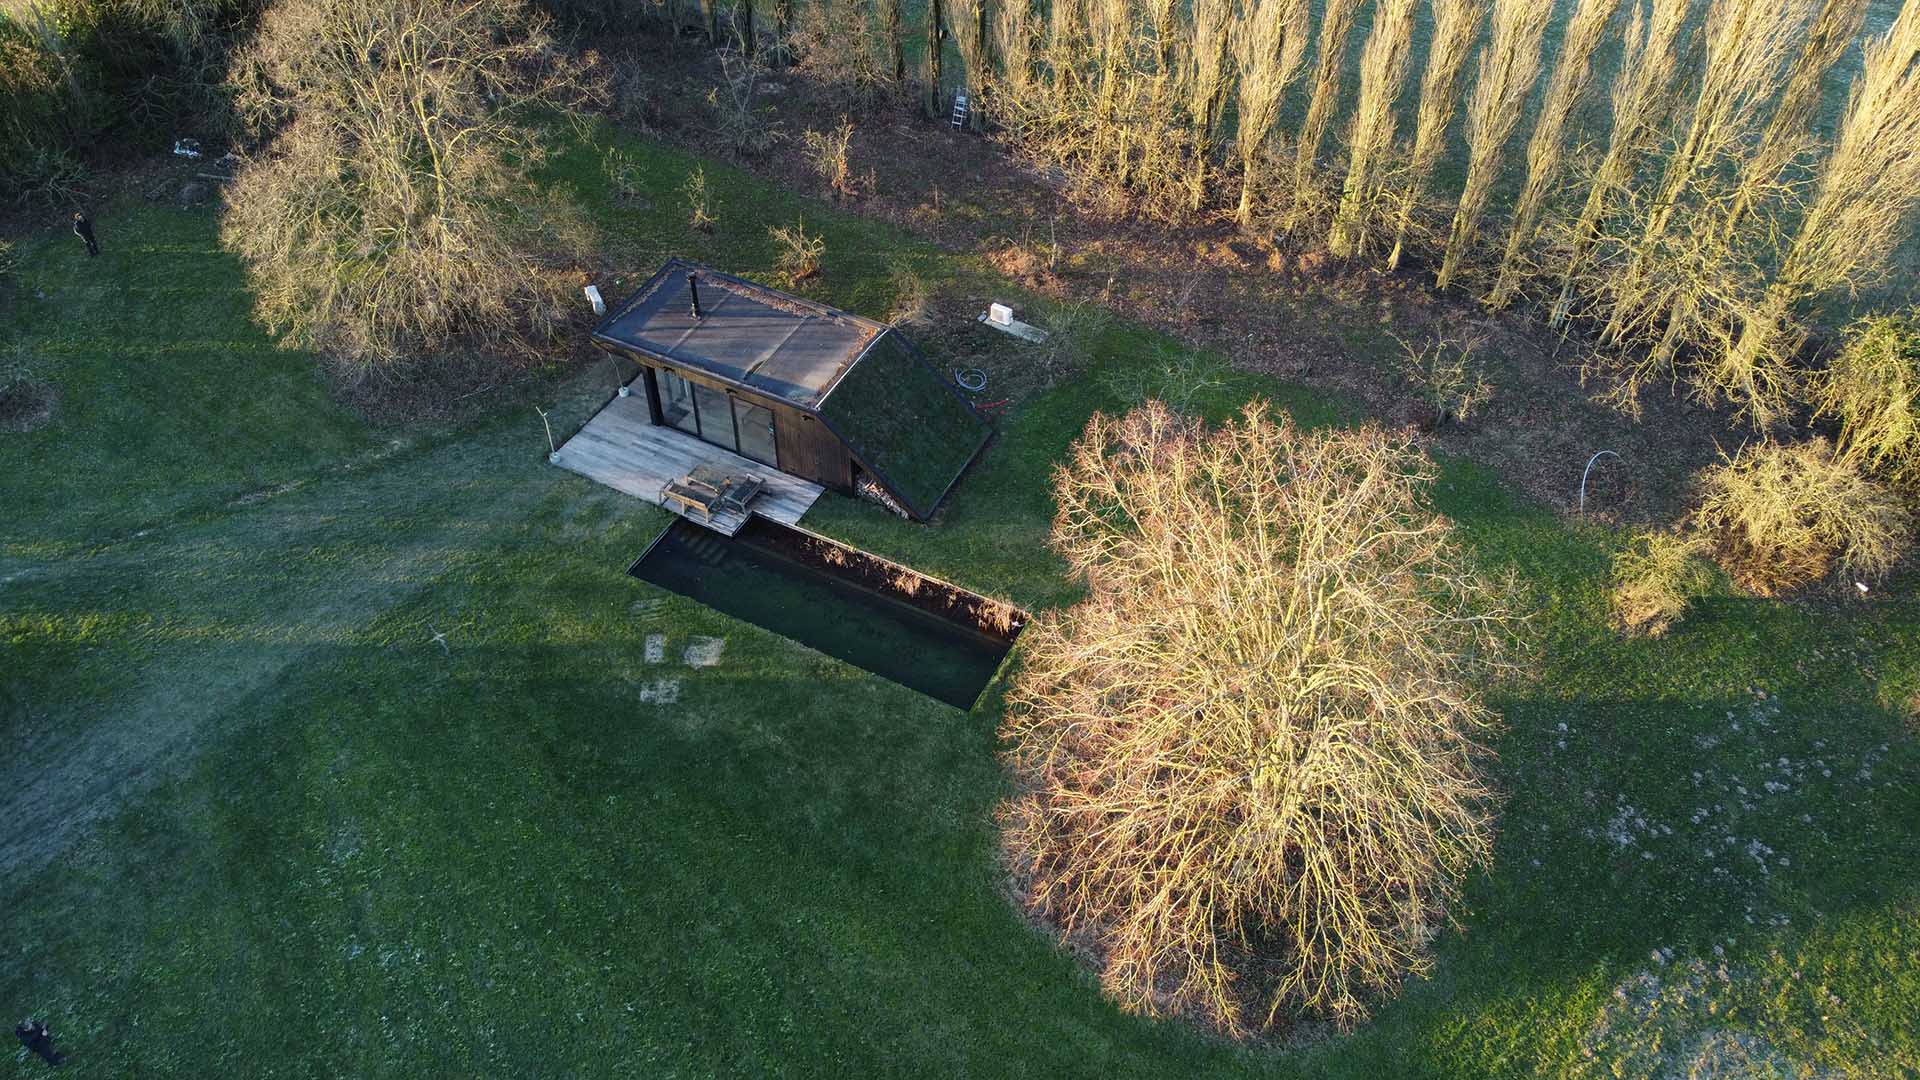 Poolhouse met groen dak | Woodz Design | Zander Steels